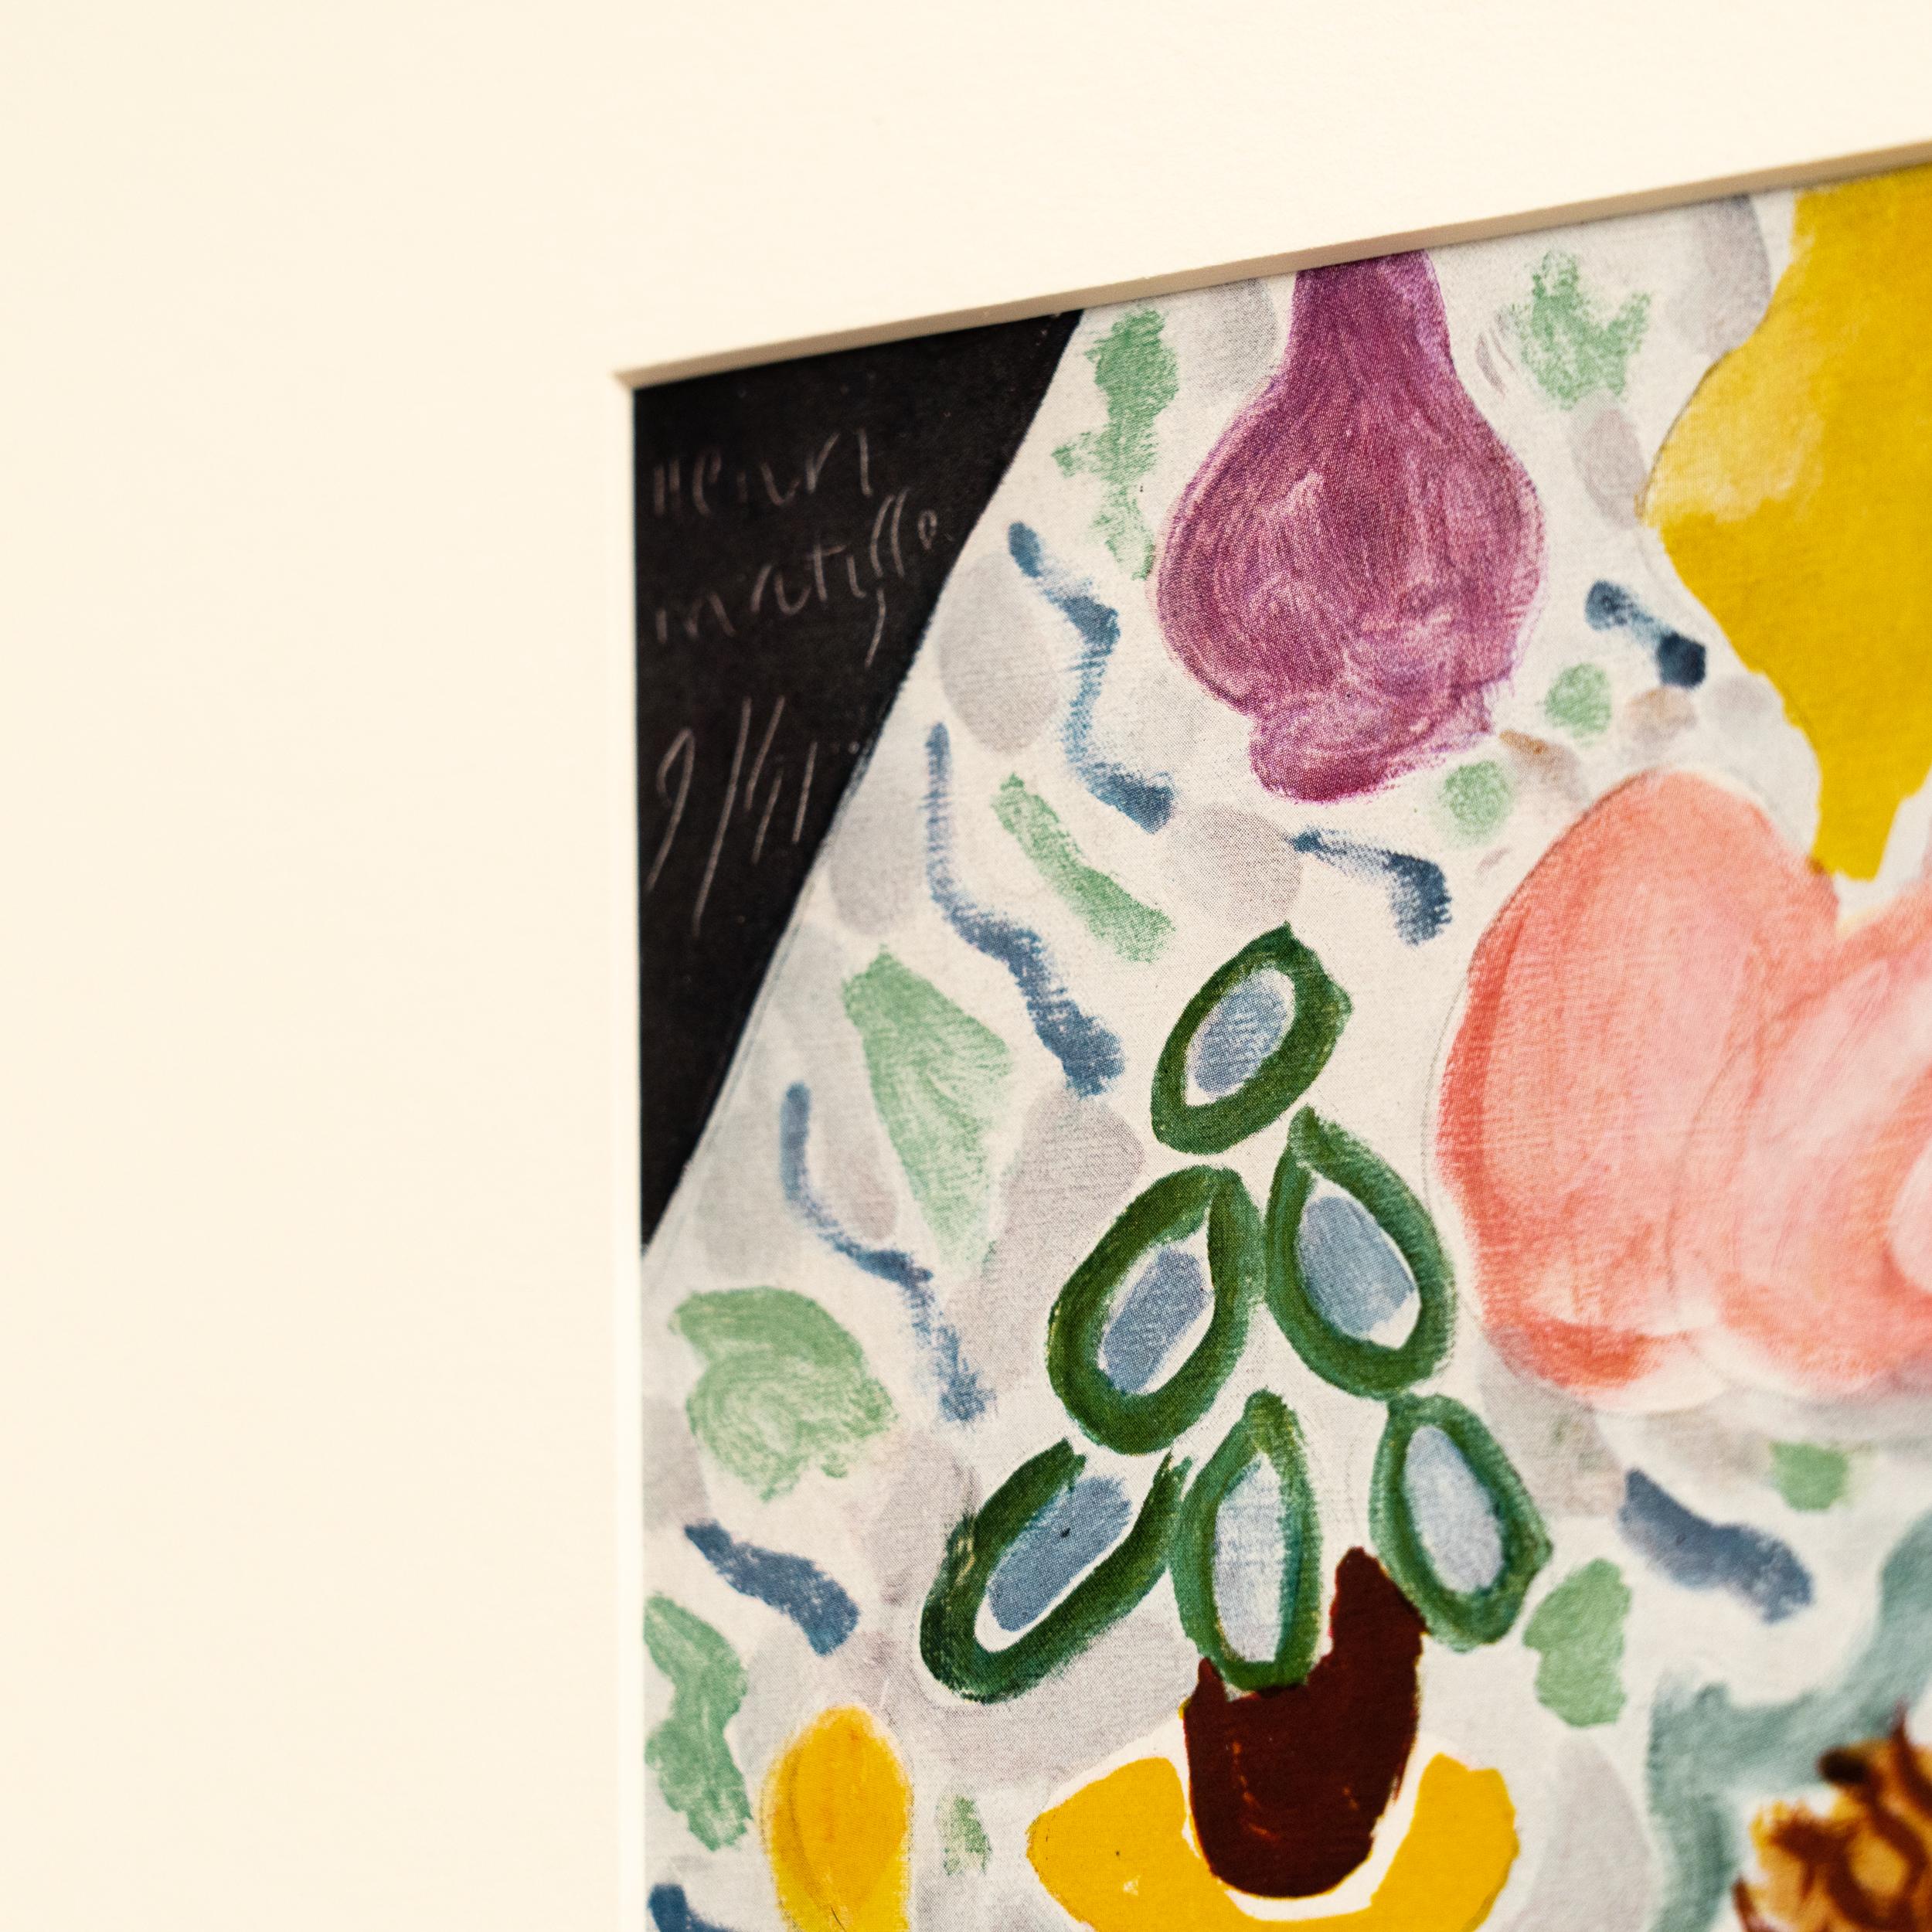 Rare Color Lithograph: A Glimpse into Matisse's Artistic Mastery For Sale 4